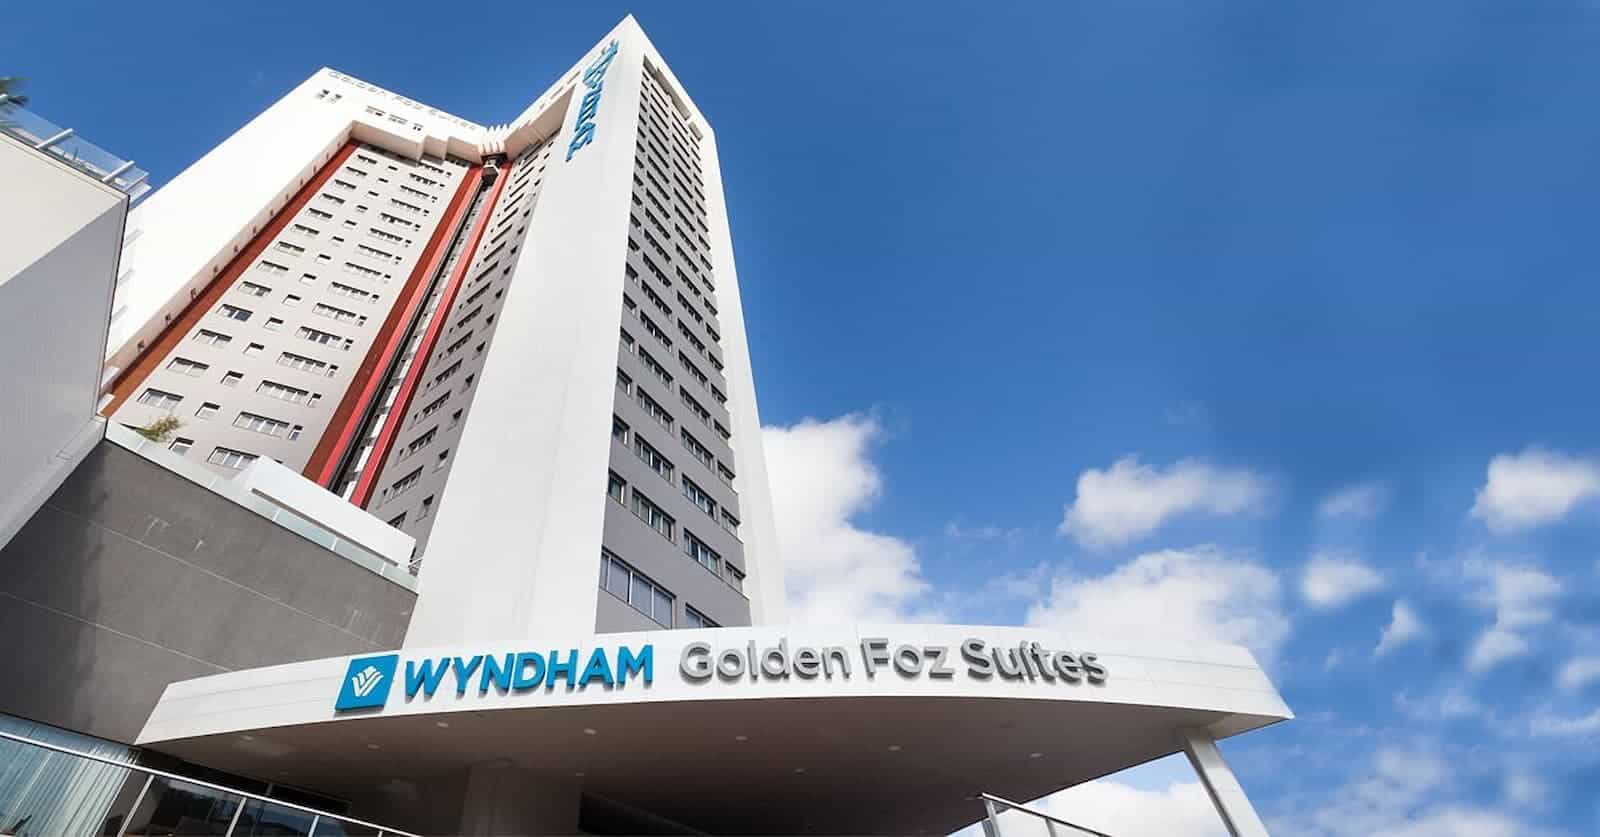 Wyndham Golden Foz